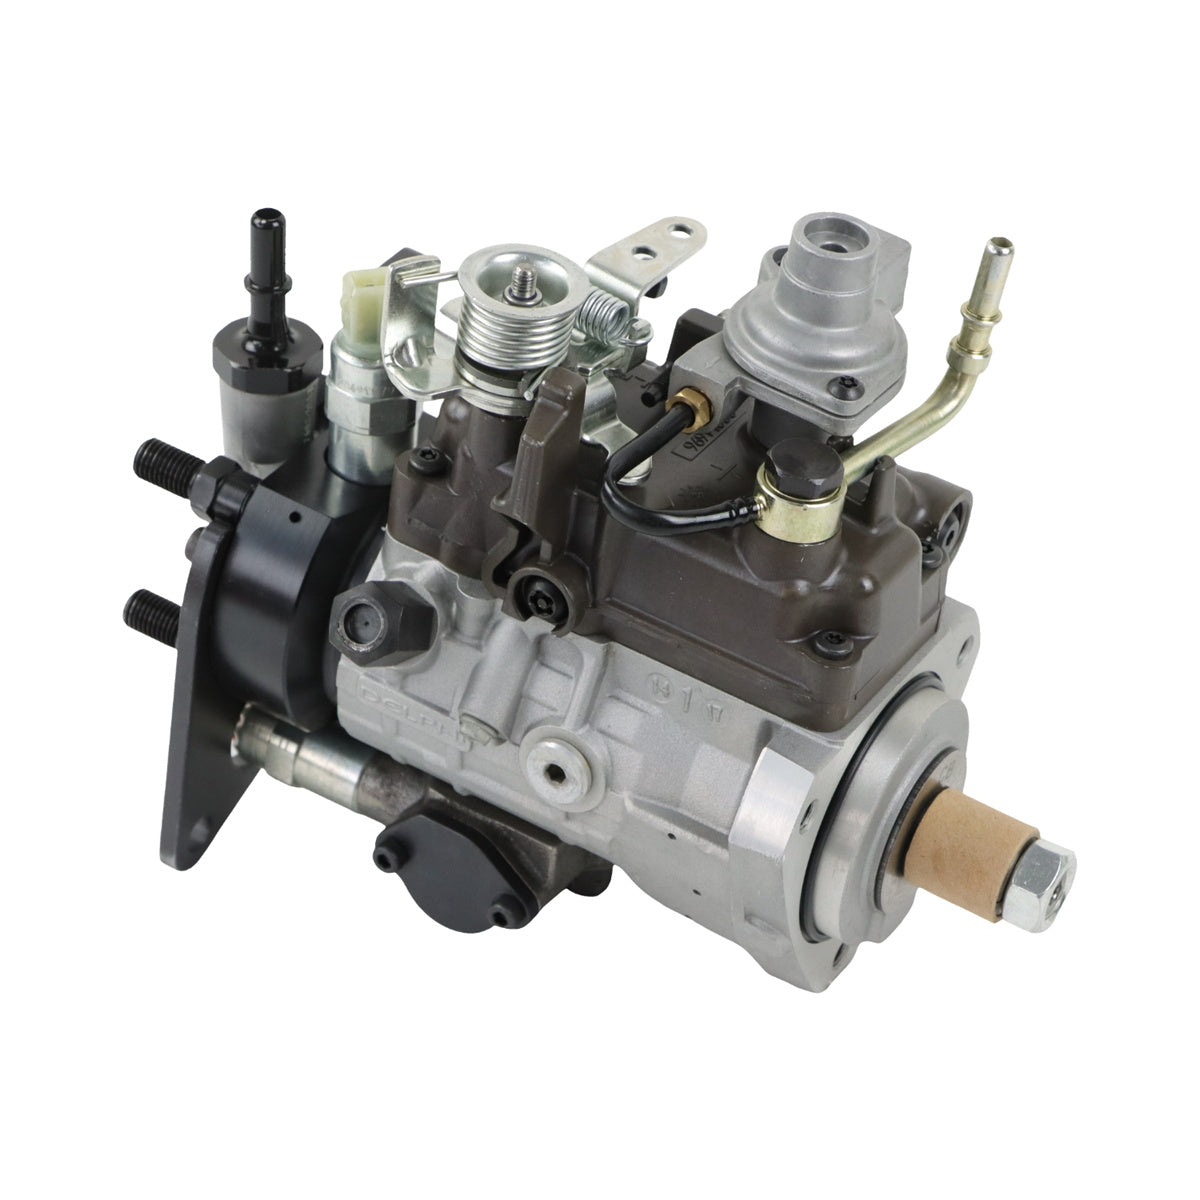 2644H003 2644H013 9320A522T 9320A217G Fuel Injection Pump for Perkins 1104C-44T - Sinocmp